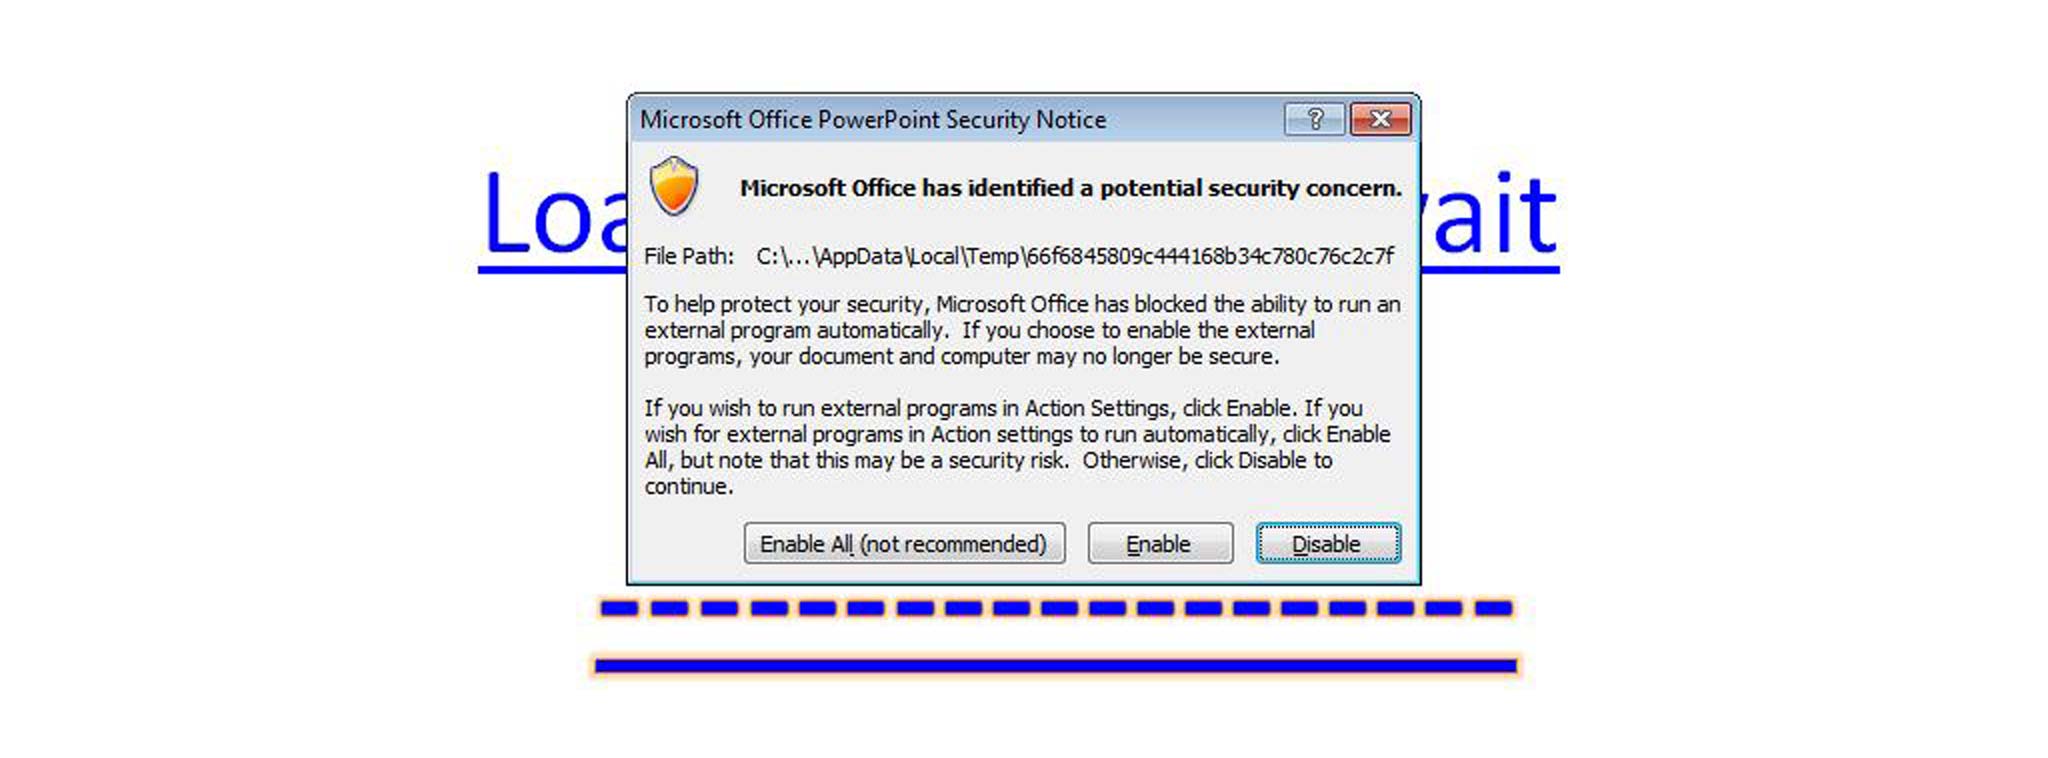 Malware tự lây nhiễm vào PC ngay khi người dùng rê chuột (không click) lên đường link chứa mã độc